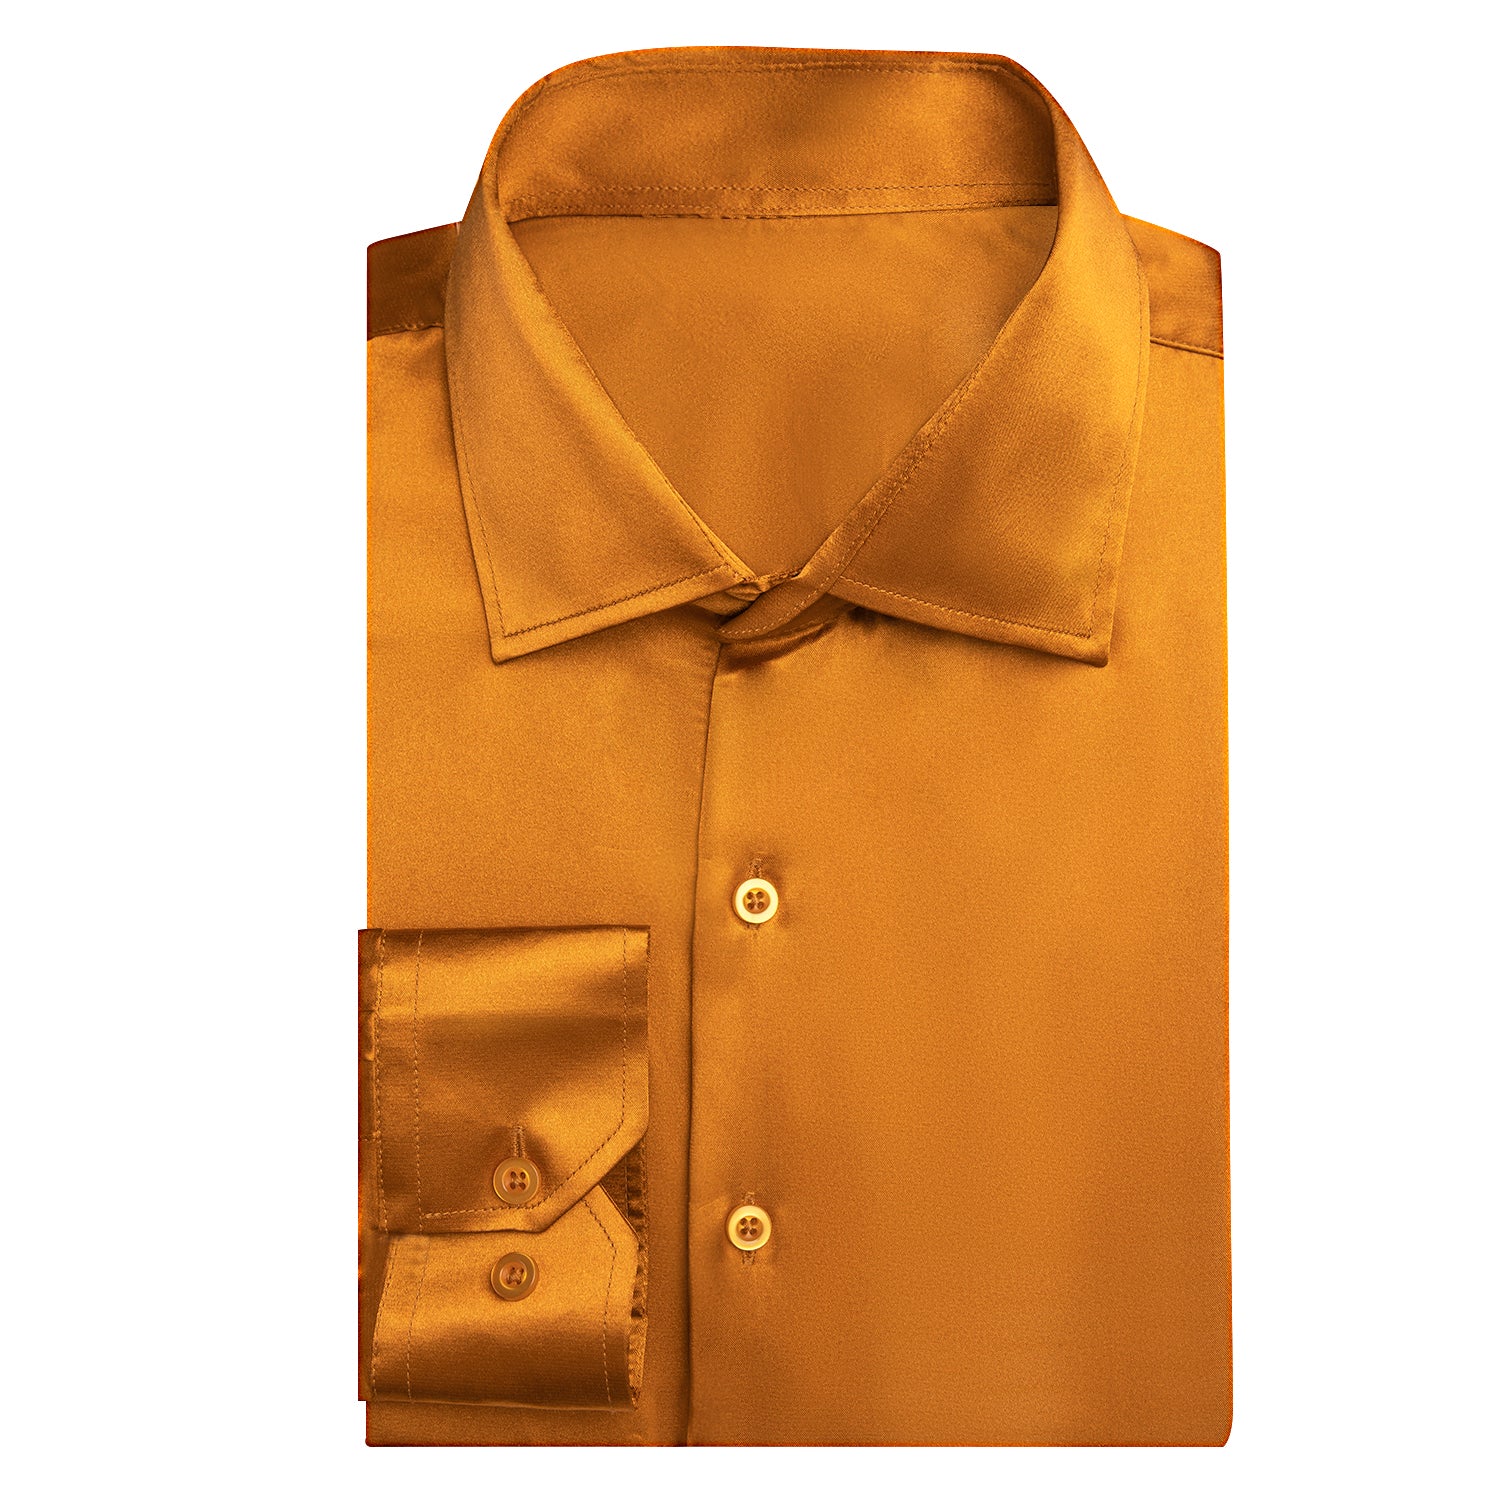 Golden Yellow Solid Satin Silk Men's Long Sleeve Dress Shirt